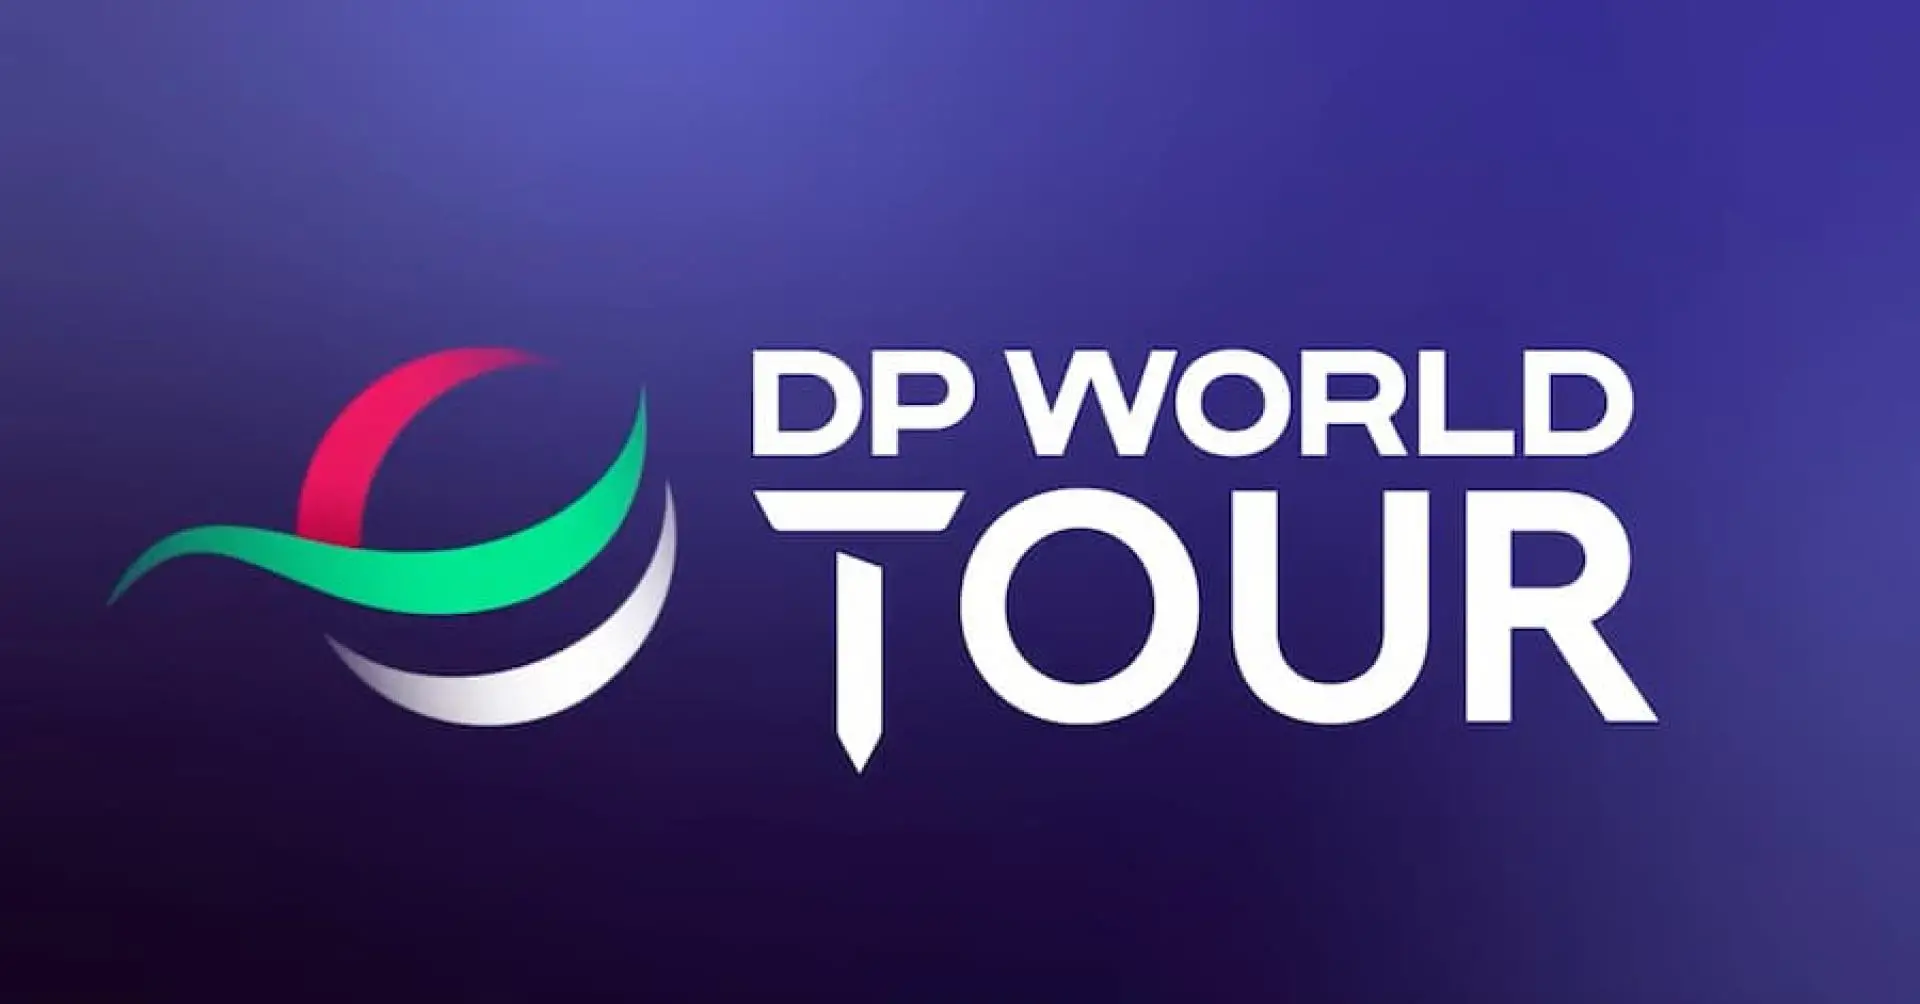 dp world tour live golf